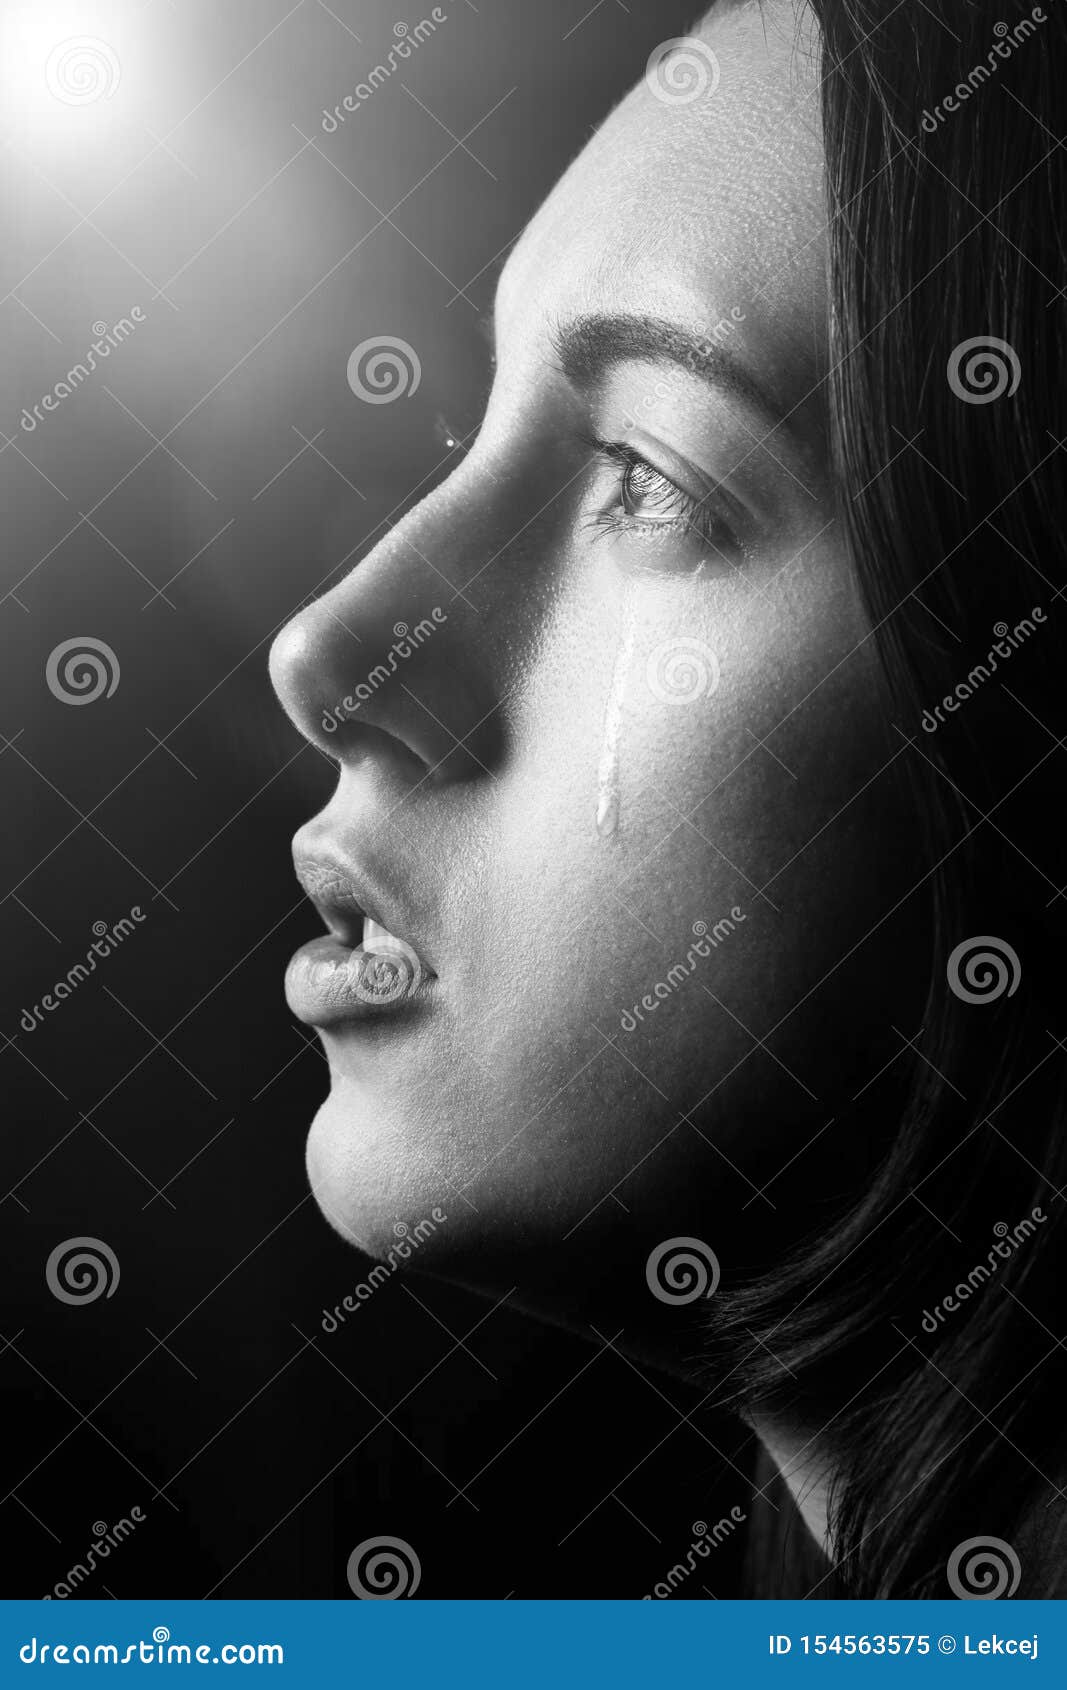 Sad crying girl stock image. Image of abuse, facial - 154563575